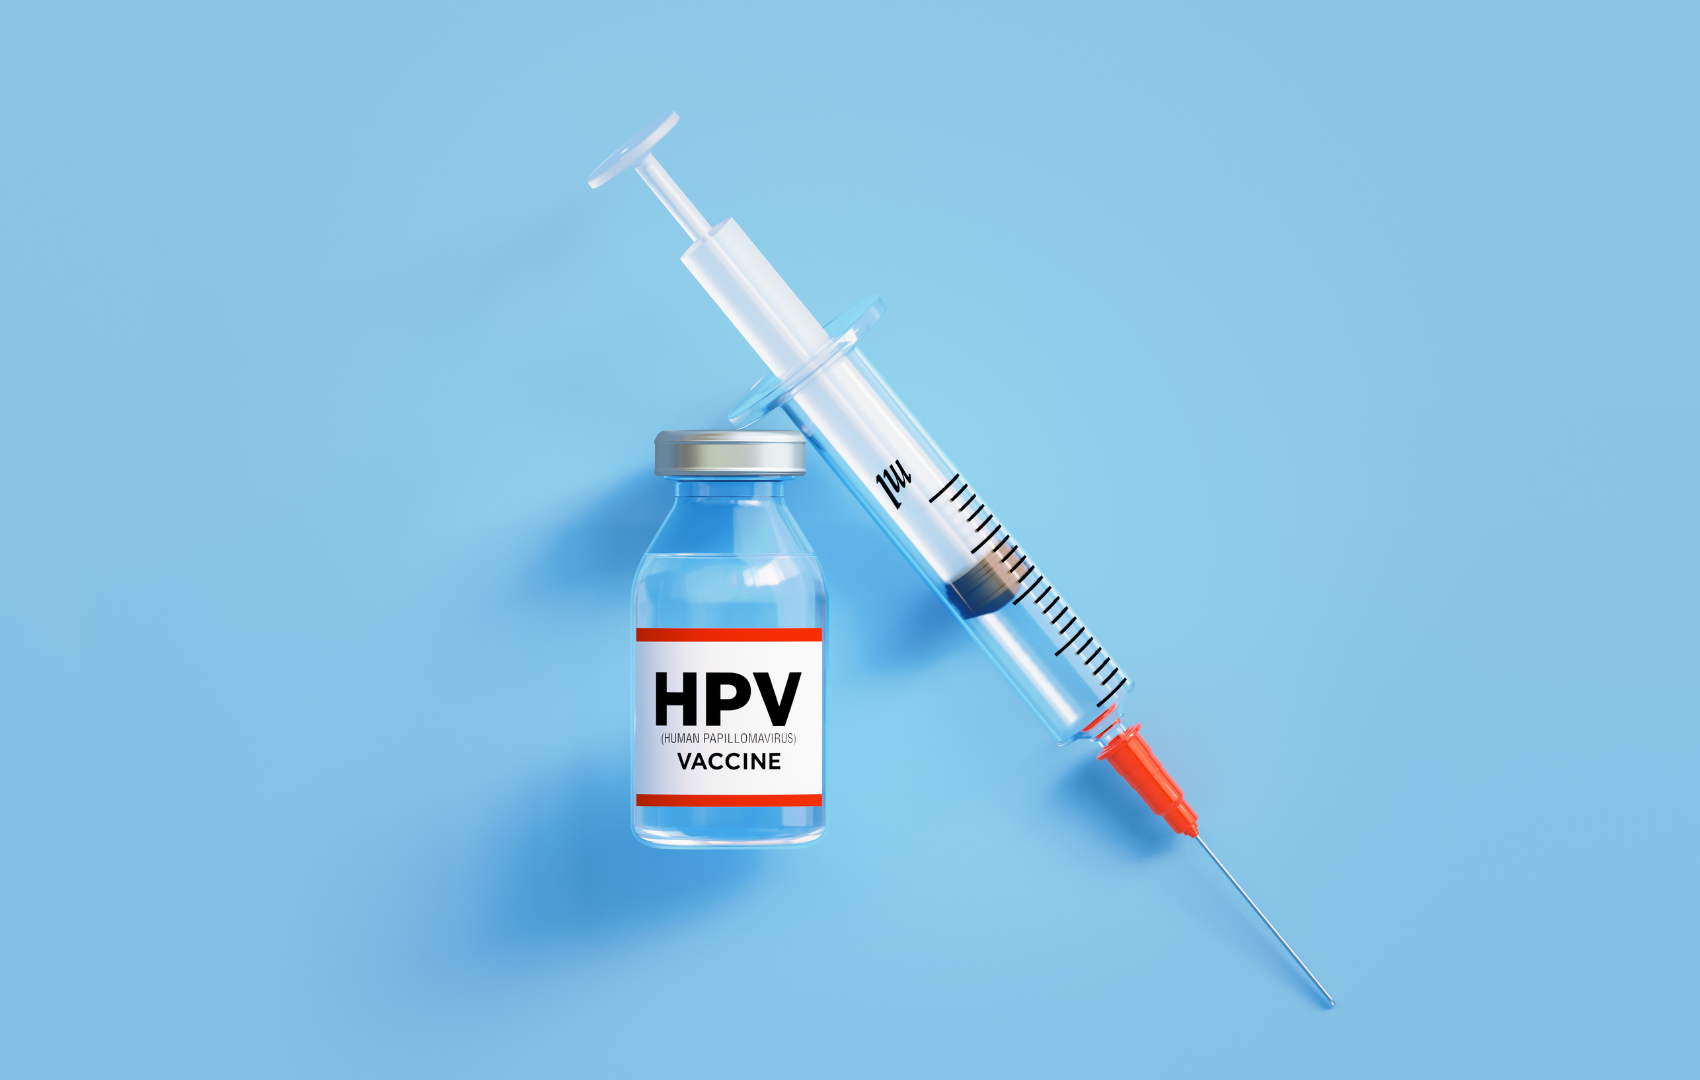 vacina hpv